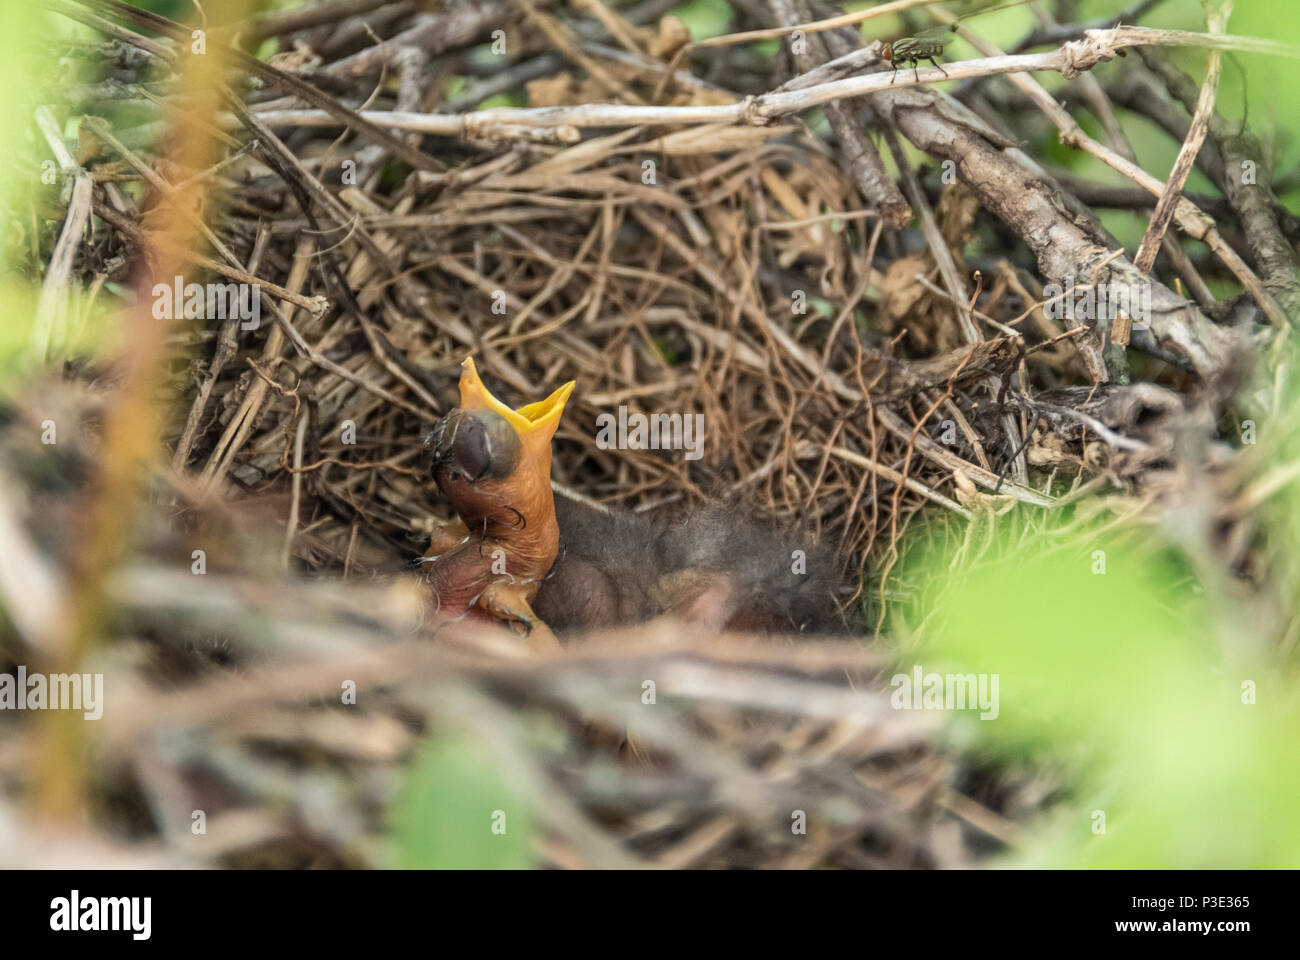 Nouveau-né oiseau avec bouche ouverte dans un nid. Banque D'Images